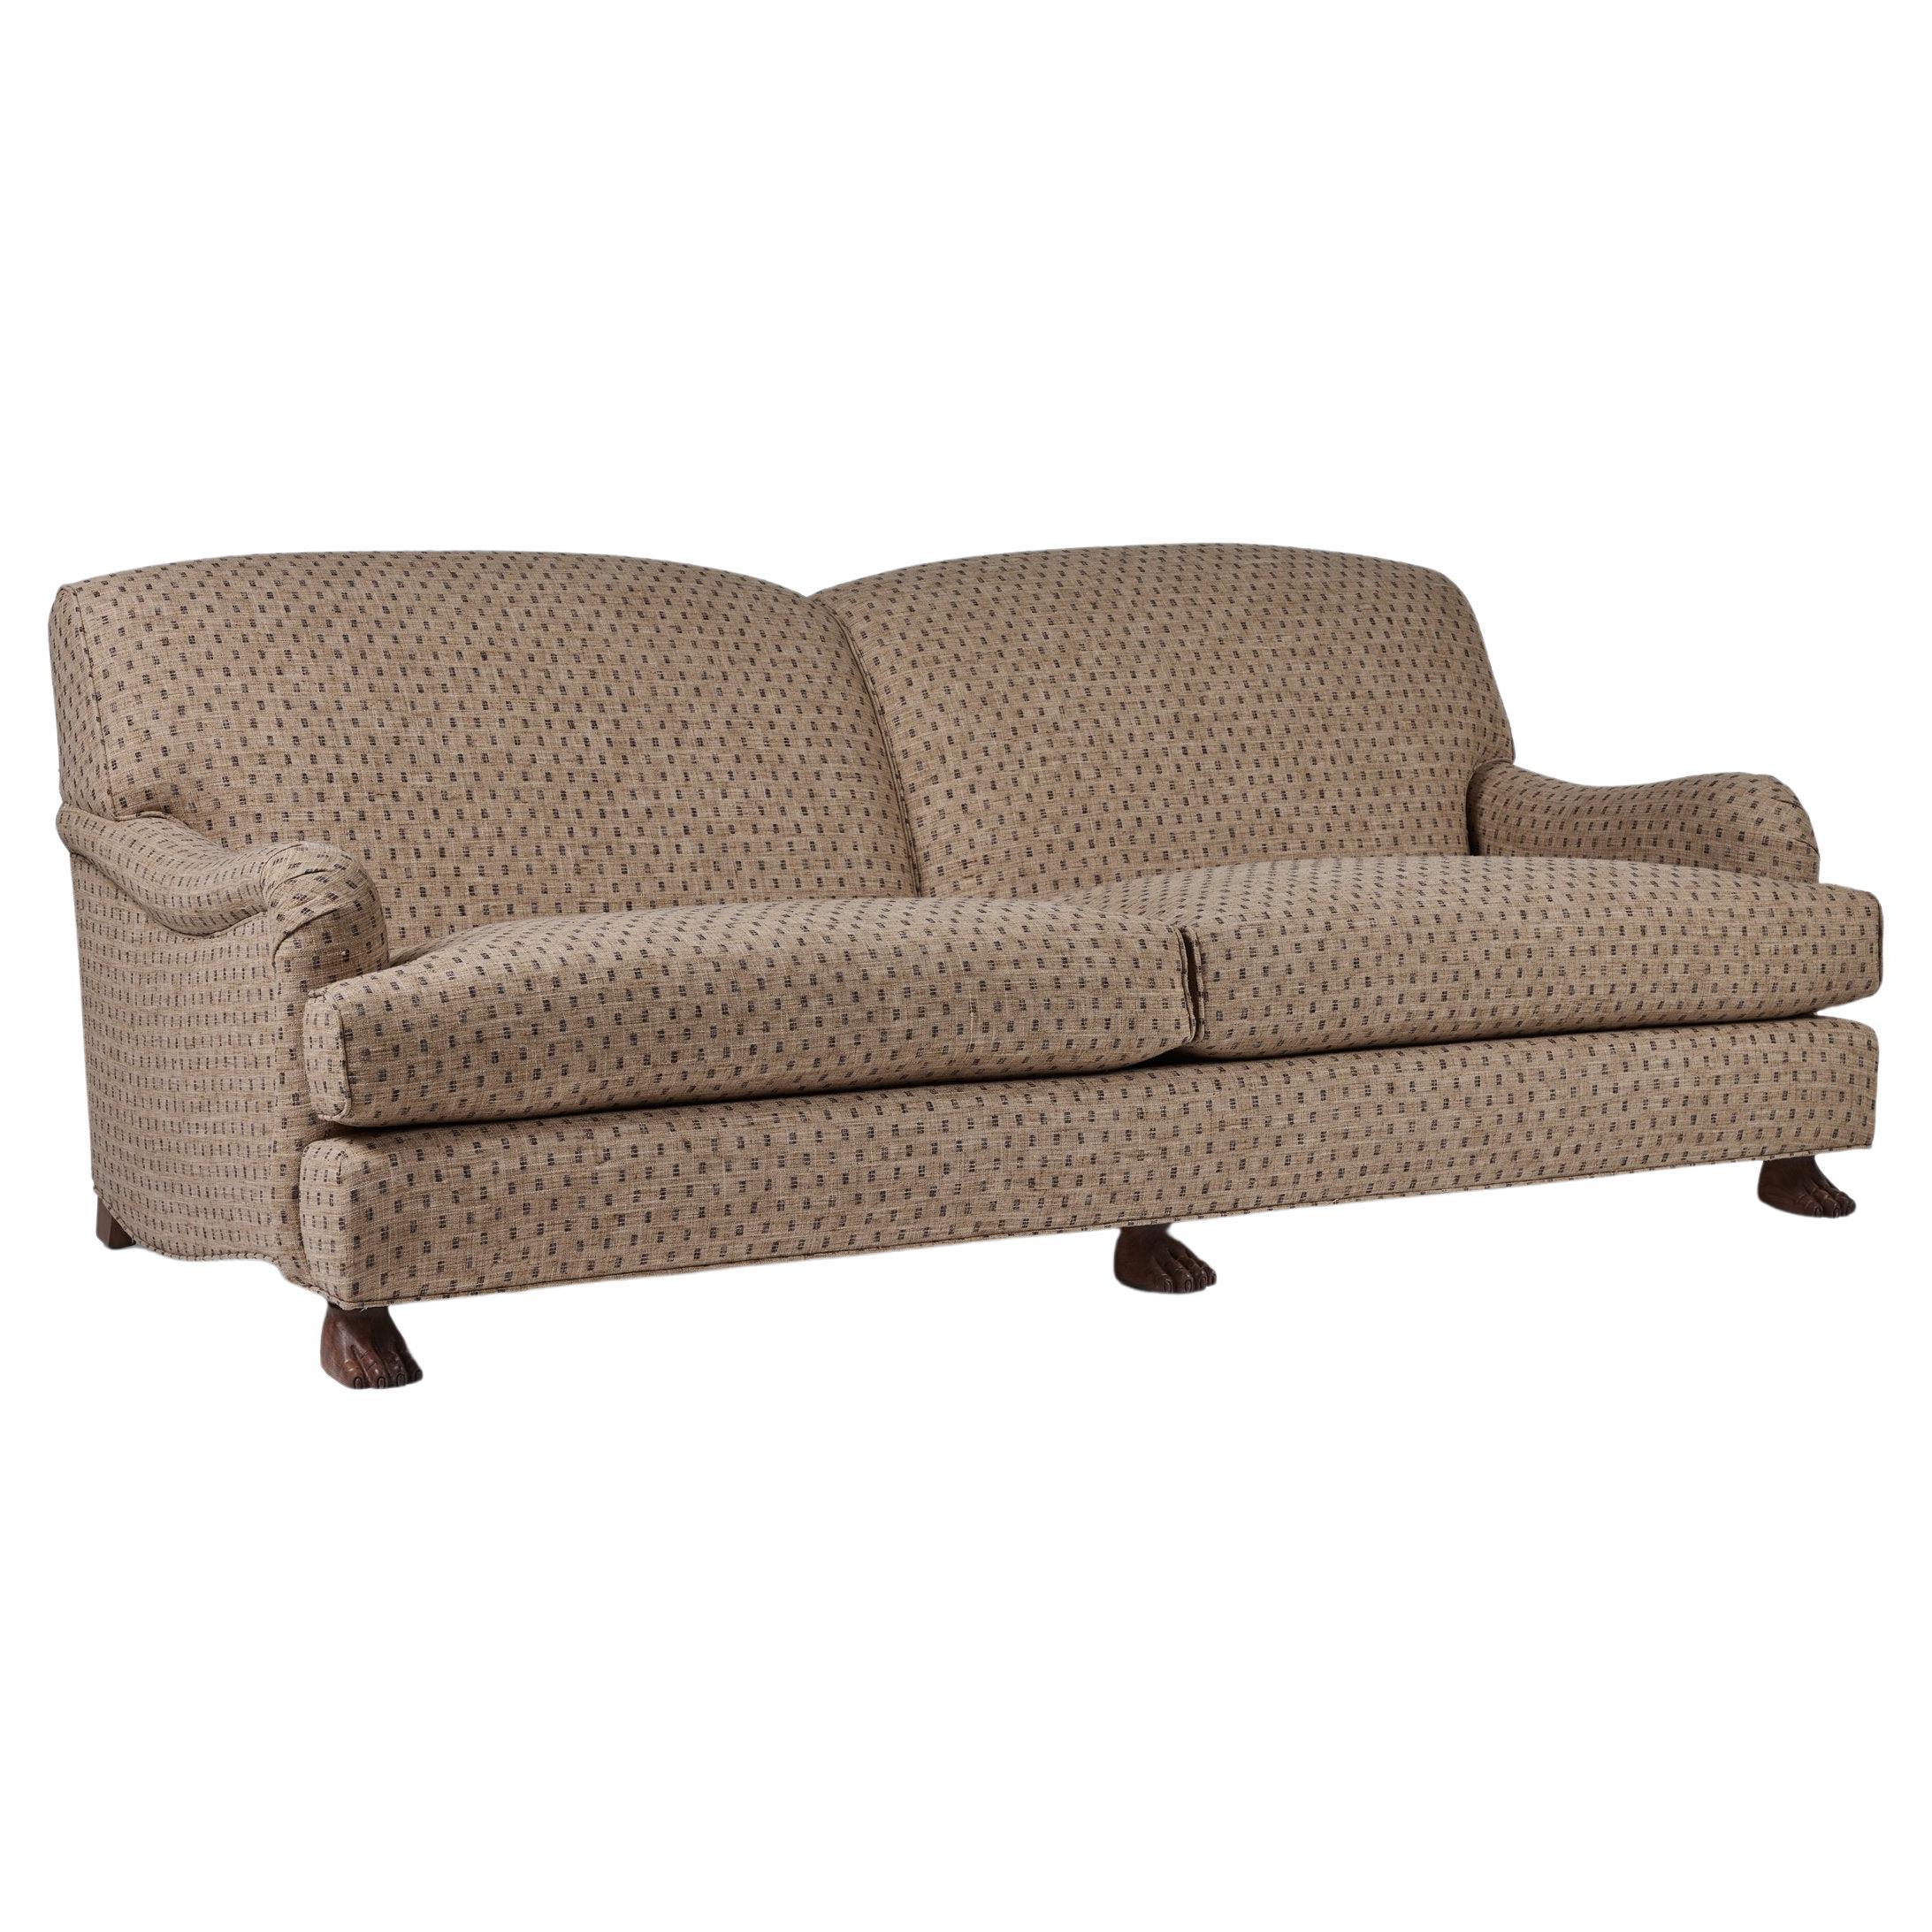 Rollarm-Sofa mit gerader Rückenlehne, losen Sitzkissen und handgeschnitzten Füßen